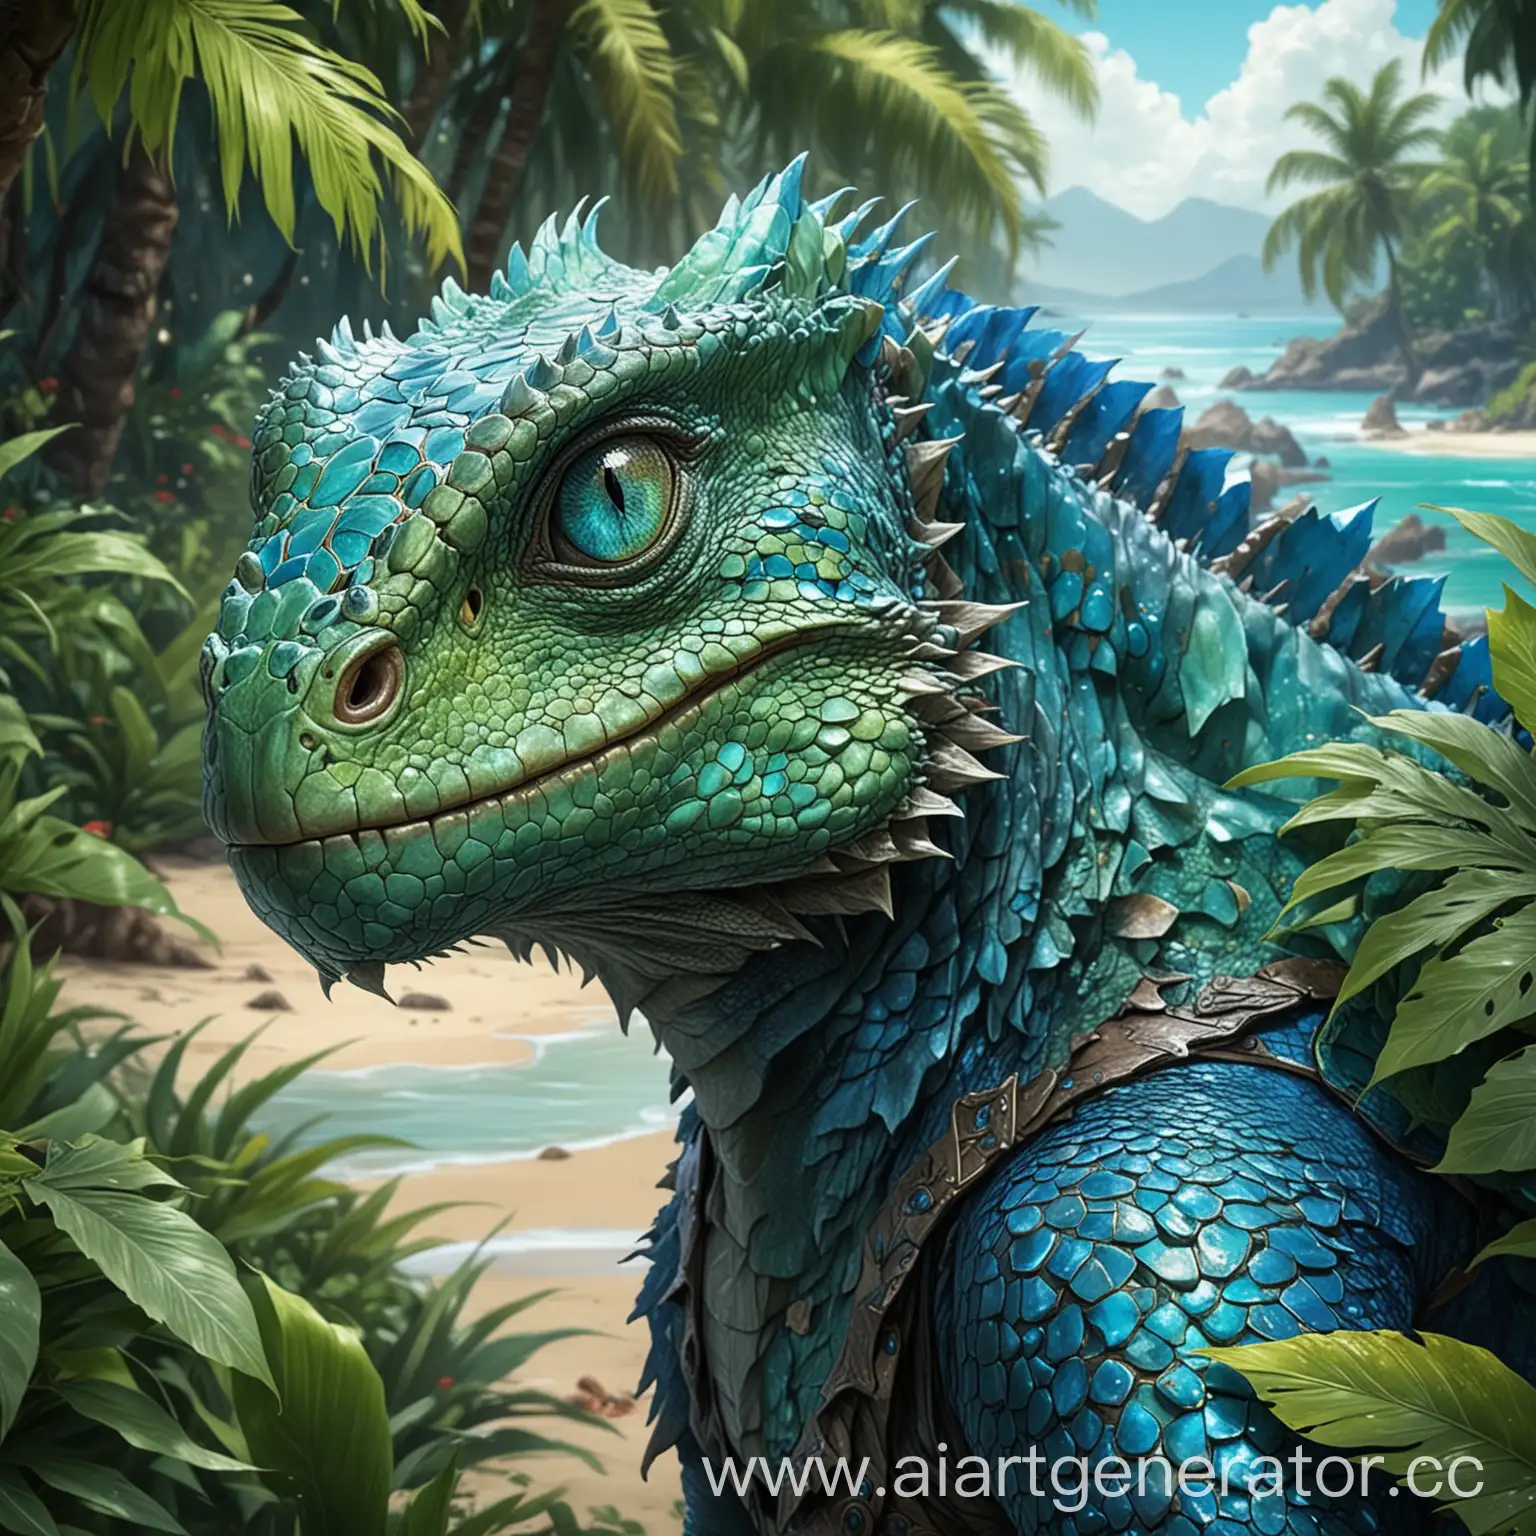 Сгенерируй ящероподобное привлекательное чудовище с зеленовато-голубой чешуей. У него должны быть выразительные голубые глаза. Стилистика рисовки Warcraft. 
На фоне должен быть райский тропический остров. 